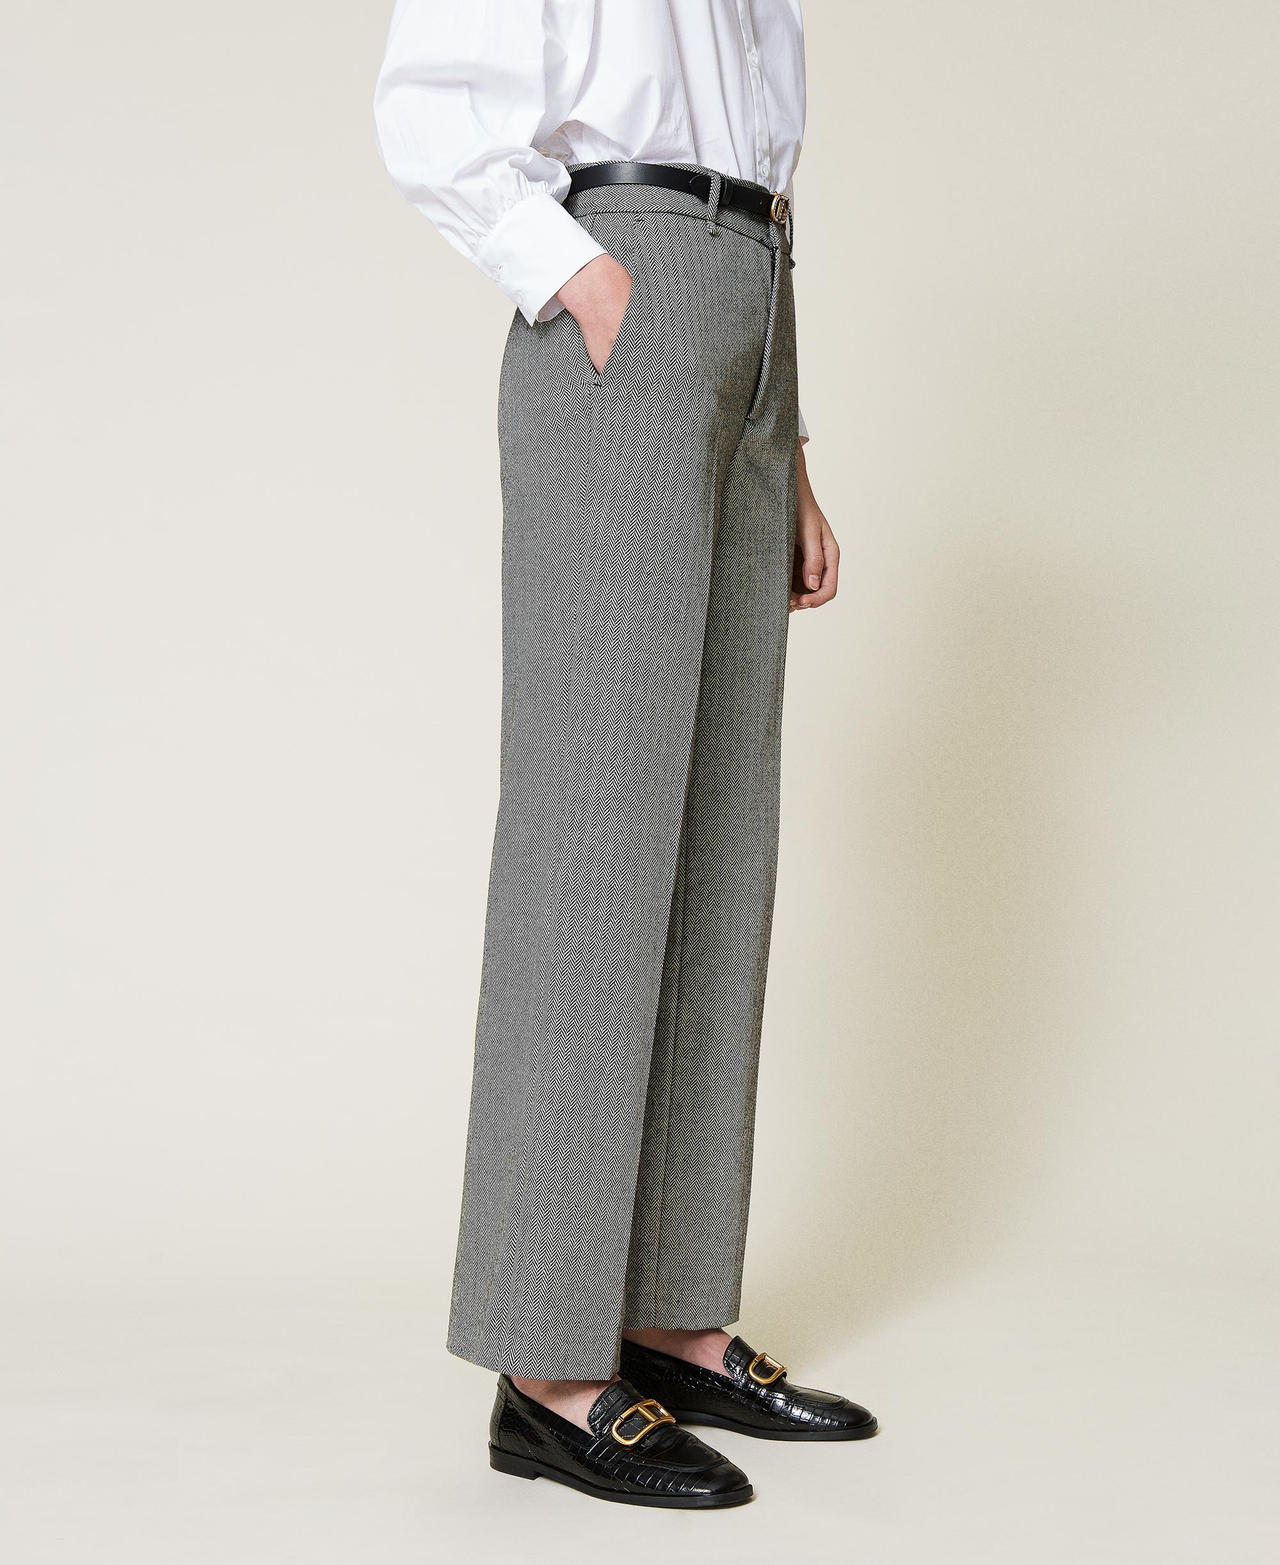 Pantalon ample en laine mélangée Chevron Noir / Blanc « Neige » Femme 212TP2553-02